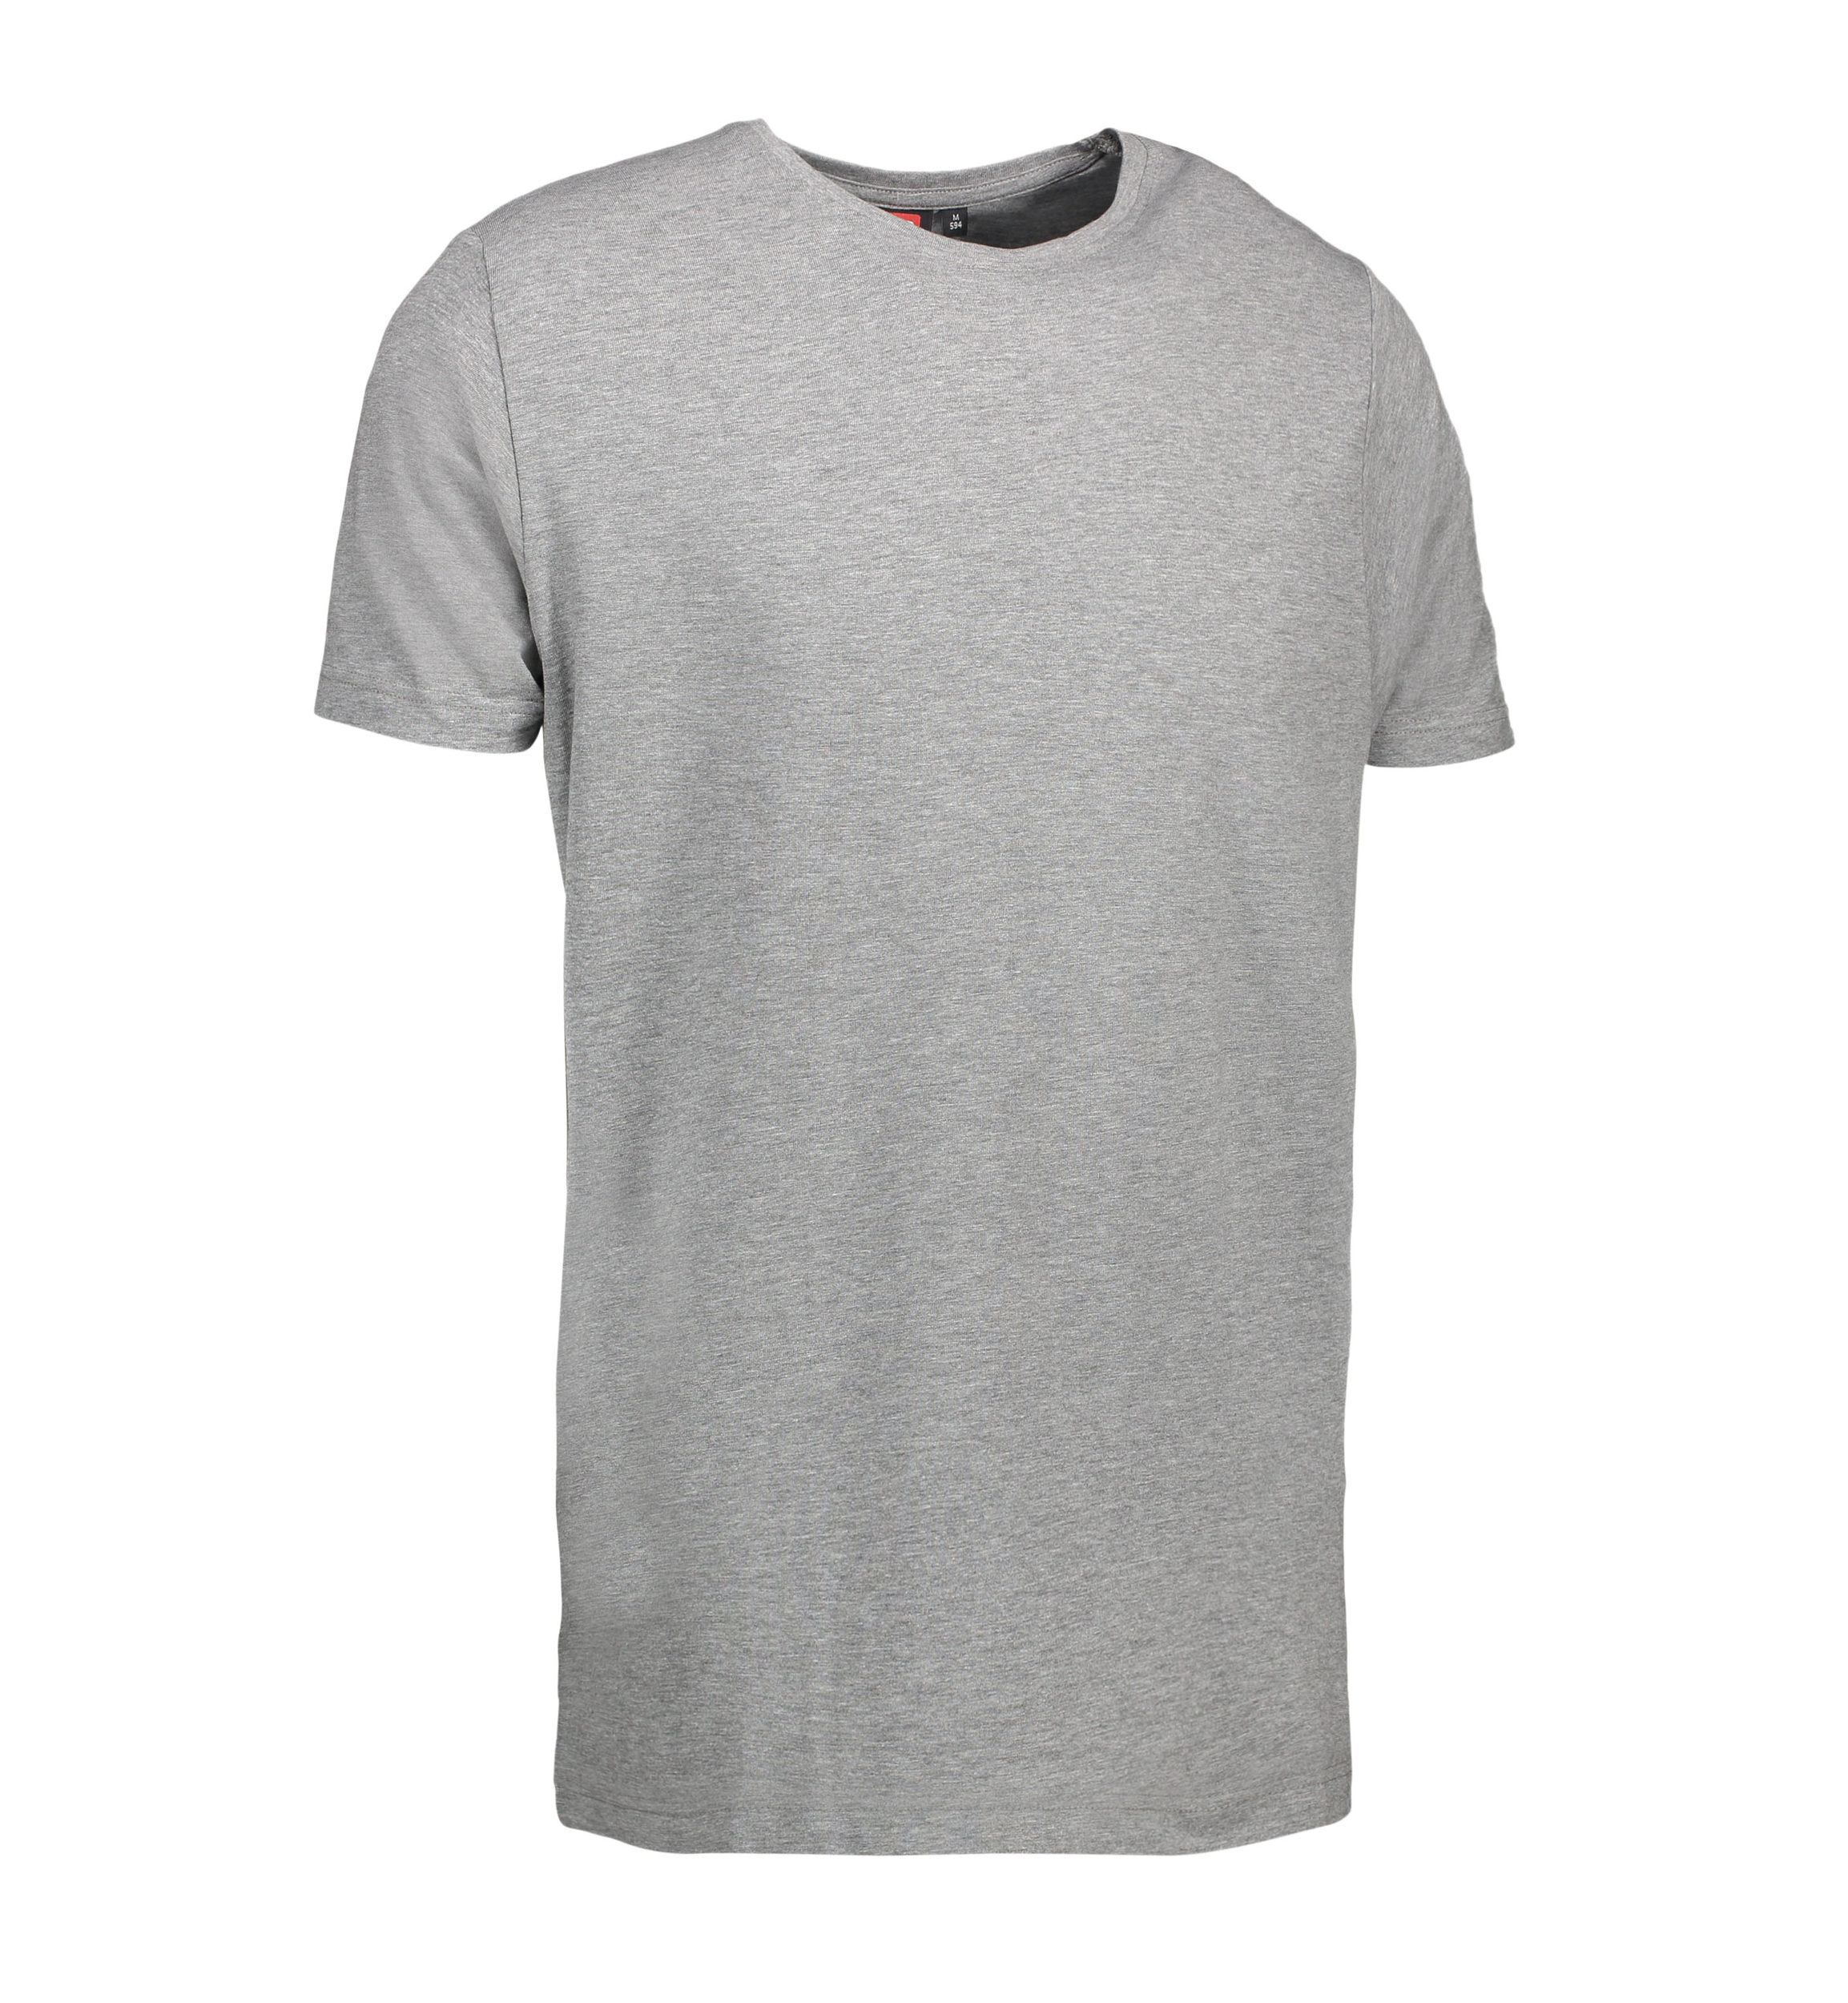 Billede af Stretch t-shirt til mænd i grå - M hos Sygeplejebutikken.dk